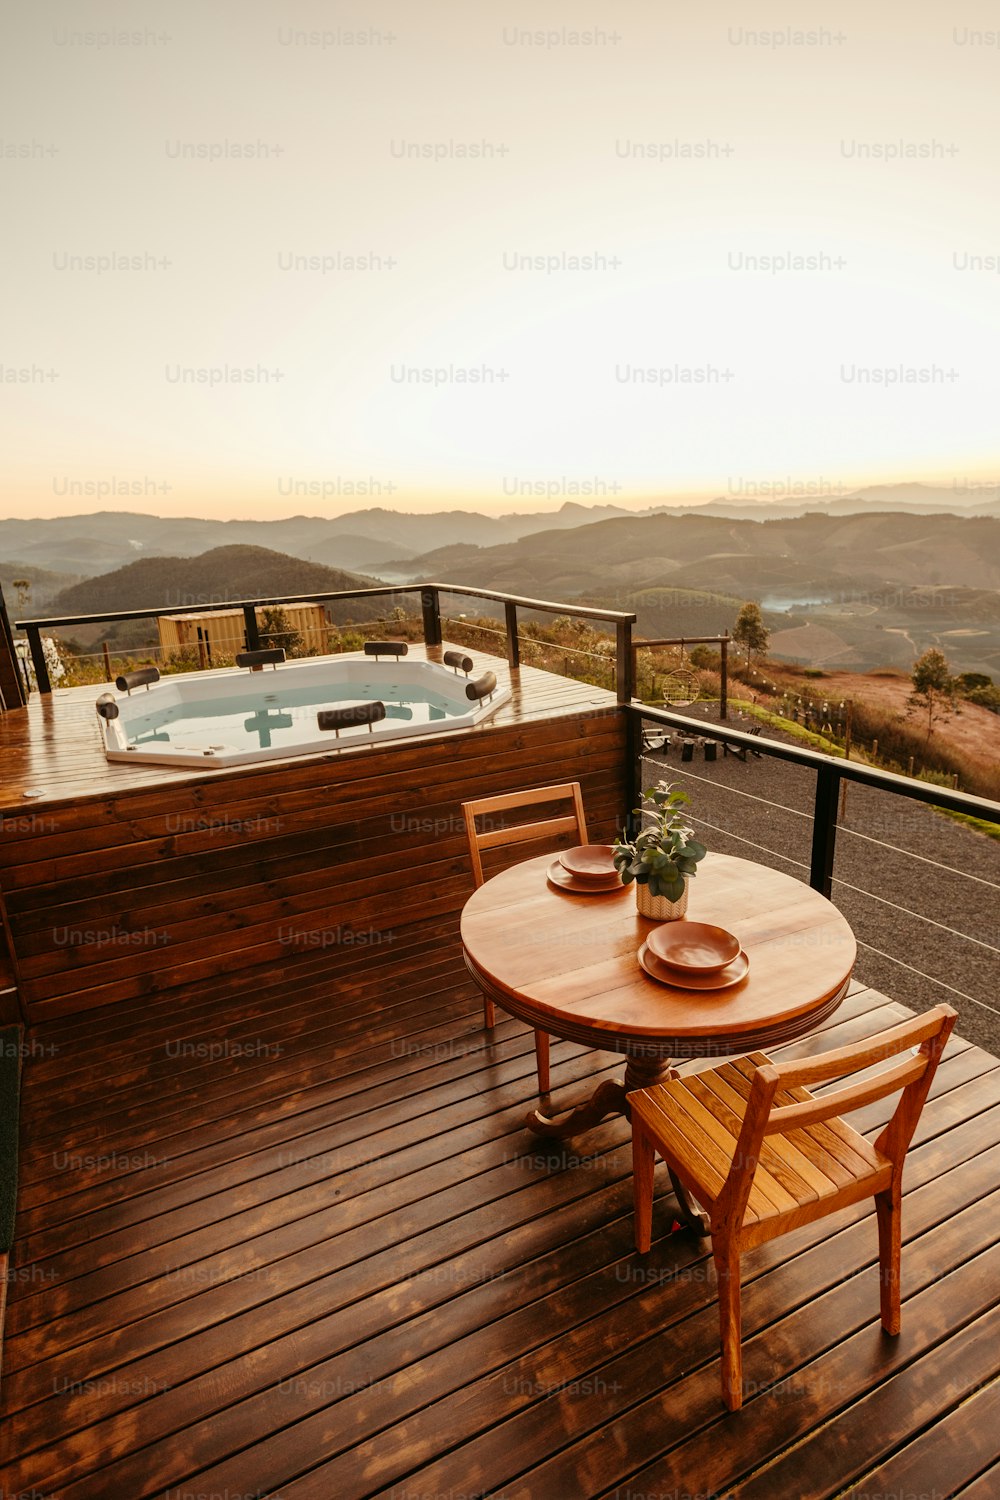 una bañera de hidromasaje en la parte superior de una terraza de madera